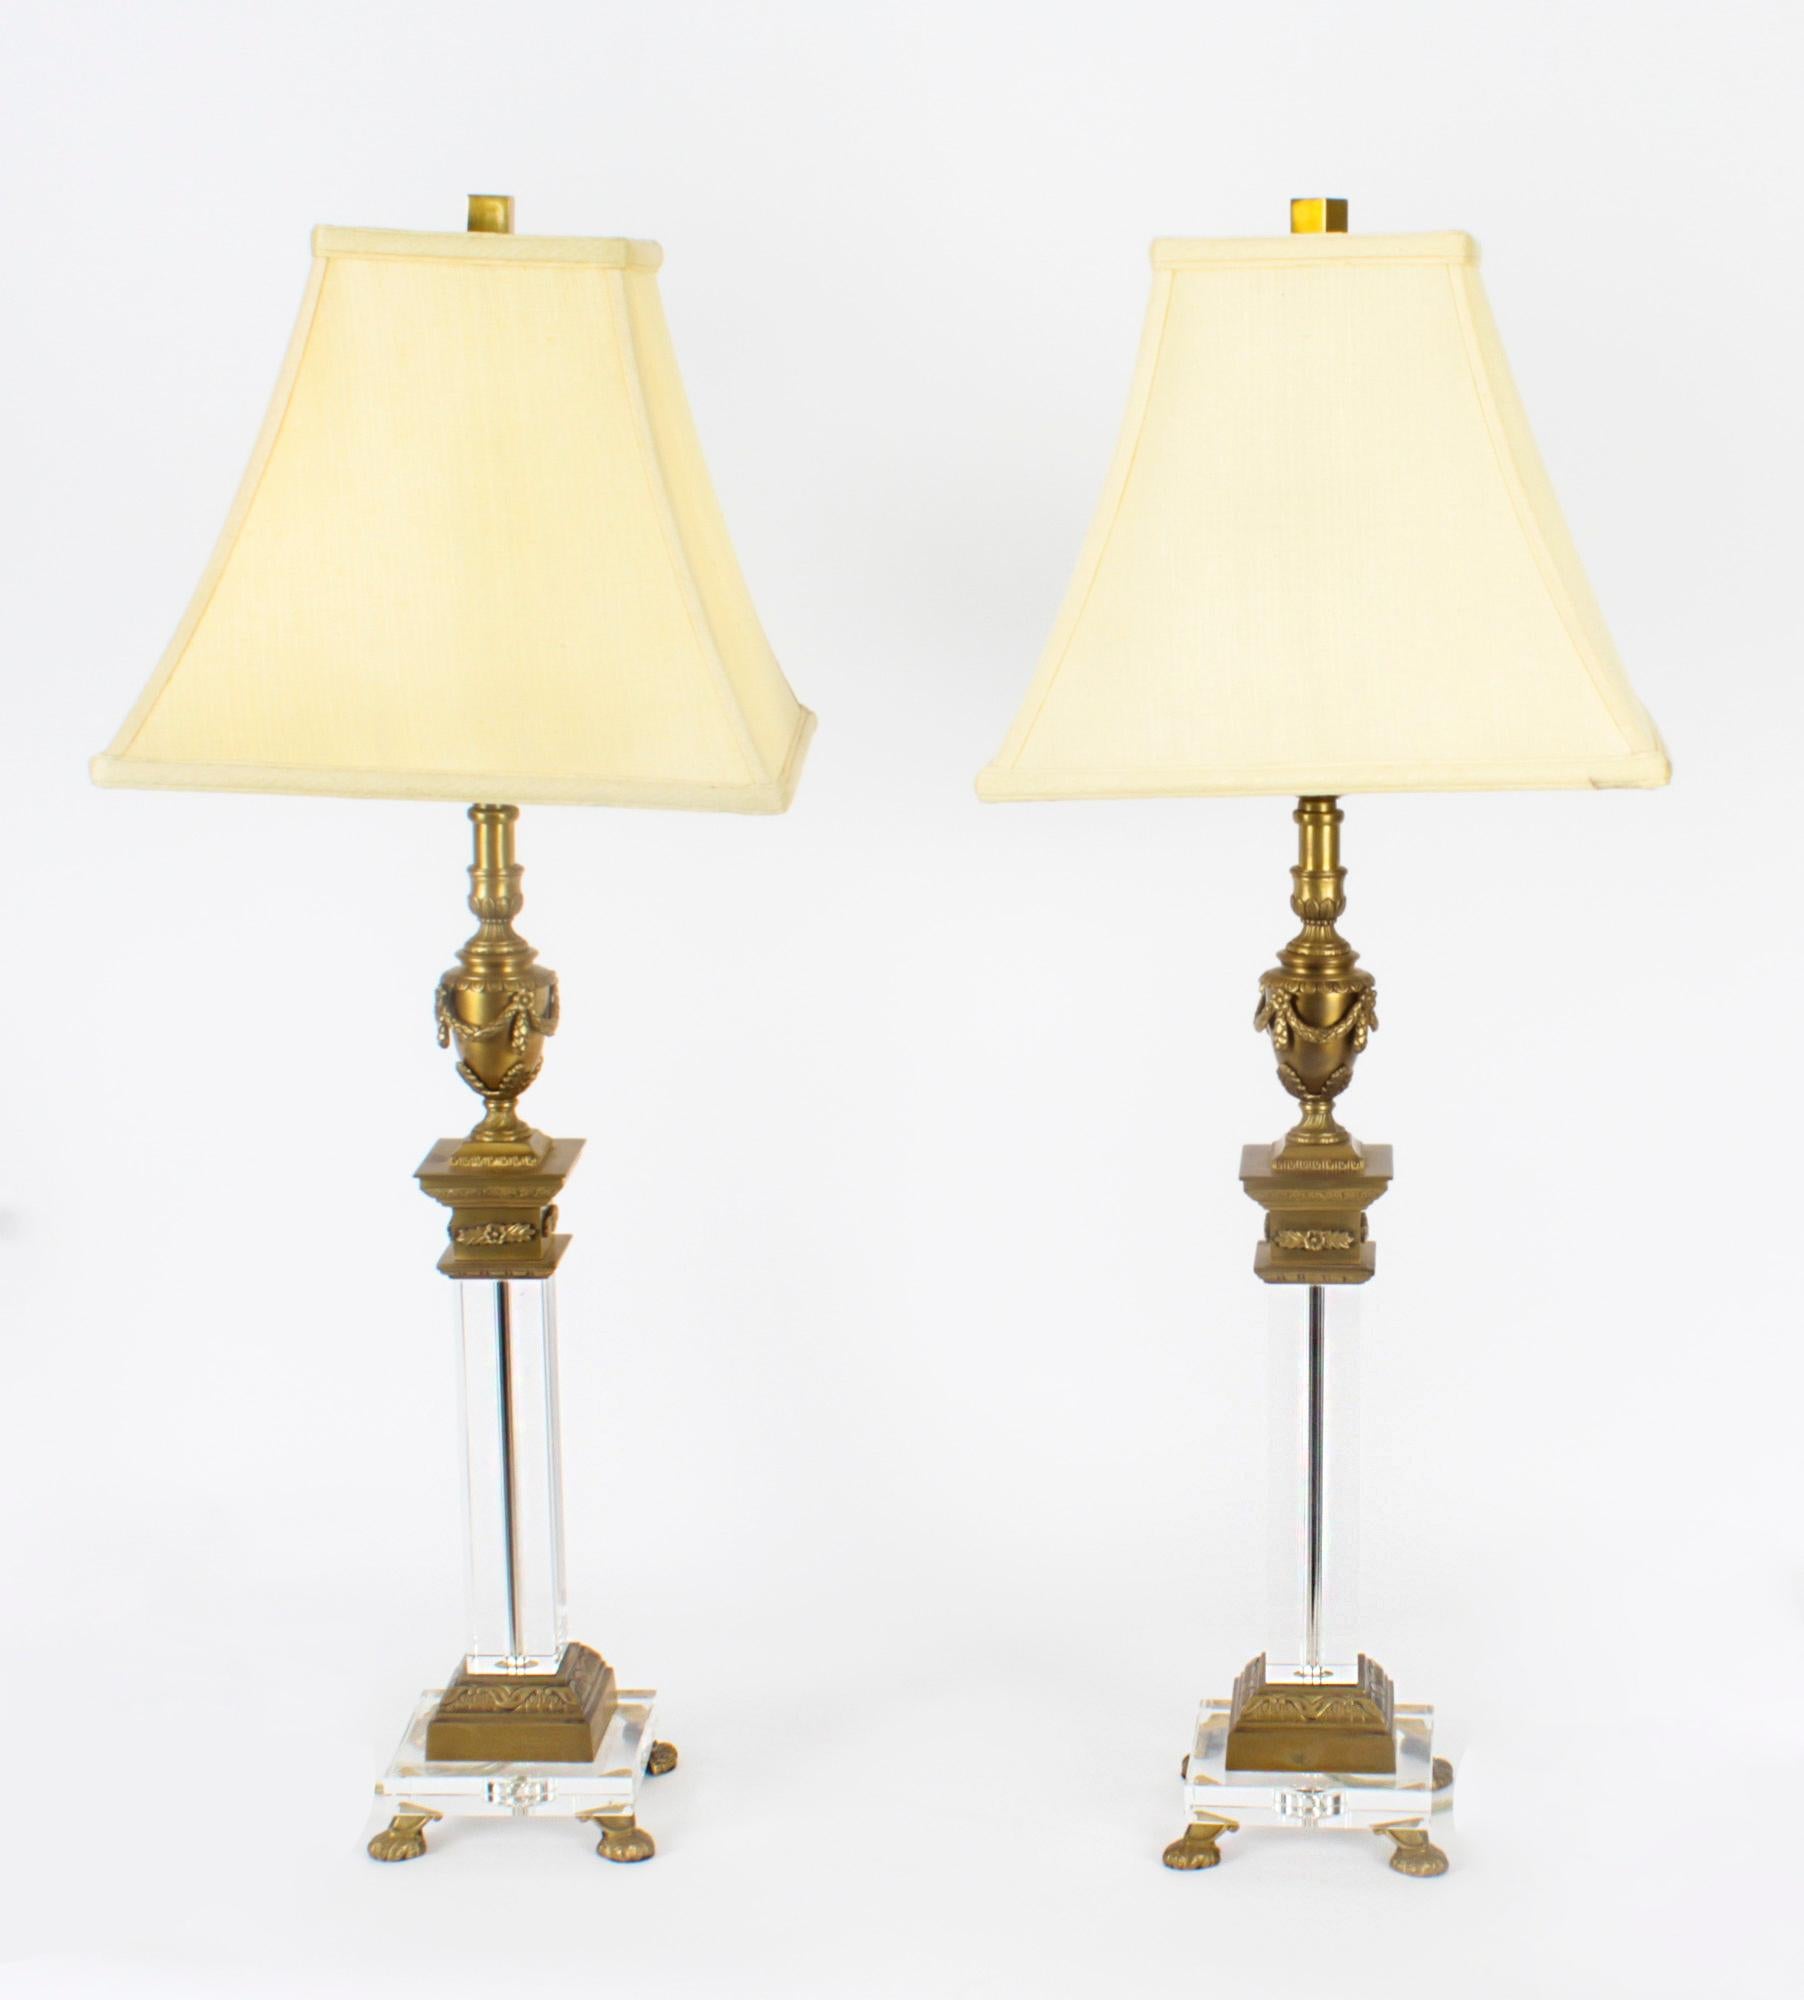 Il s'agit d'un impressionnant ensemble de quatre lampes de table en bronze doré et verre, de style classique, à colonne corinthienne et urne, datant de la moitié du 20e siècle.

Chaque lampe présente un chapiteau classique en forme d'urne avec des